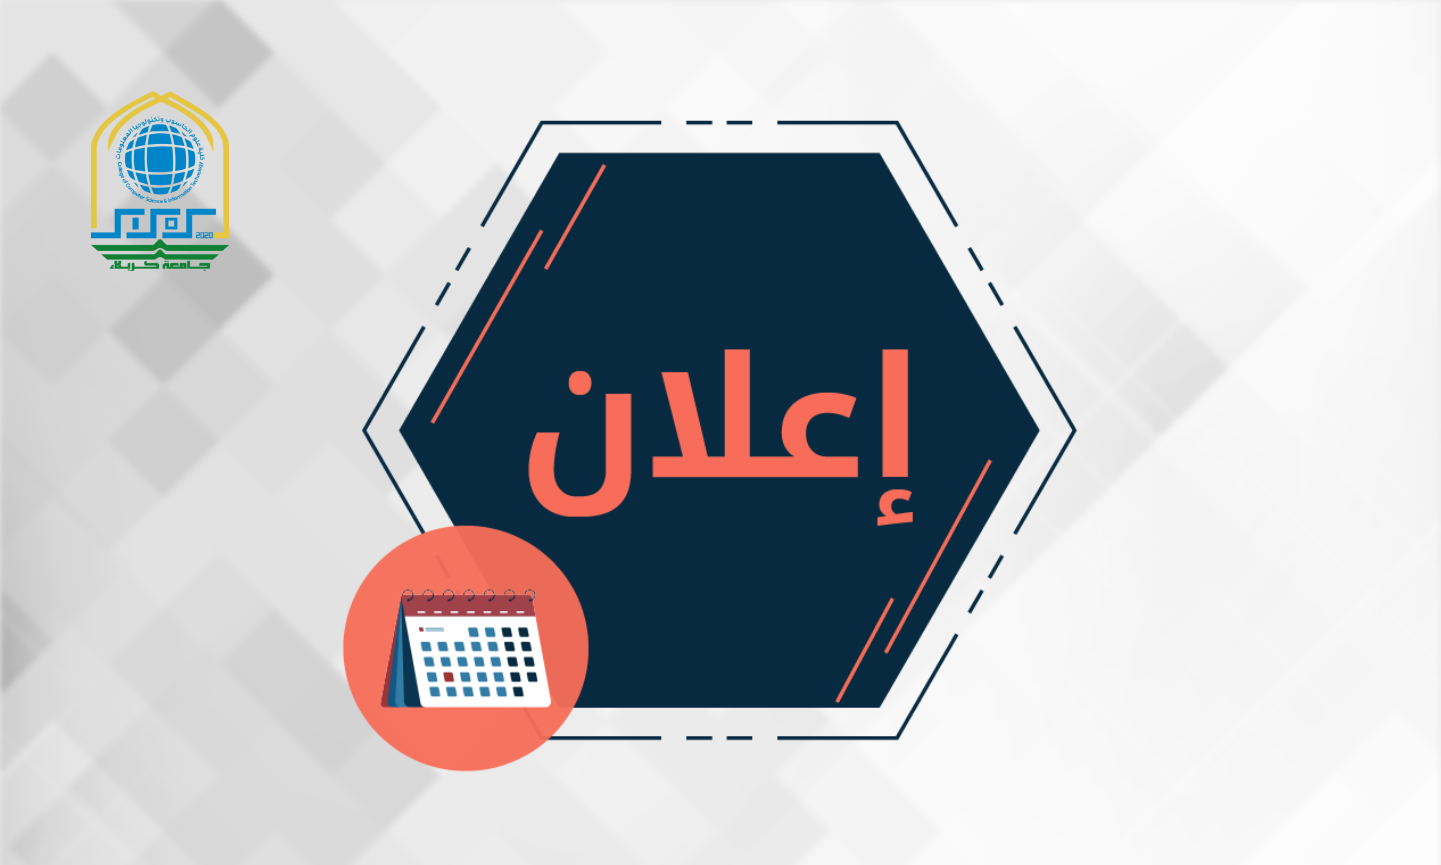 Read more about the article اعلان الى المتقدمين للدراسات العليا في قسم علوم الحاسوب